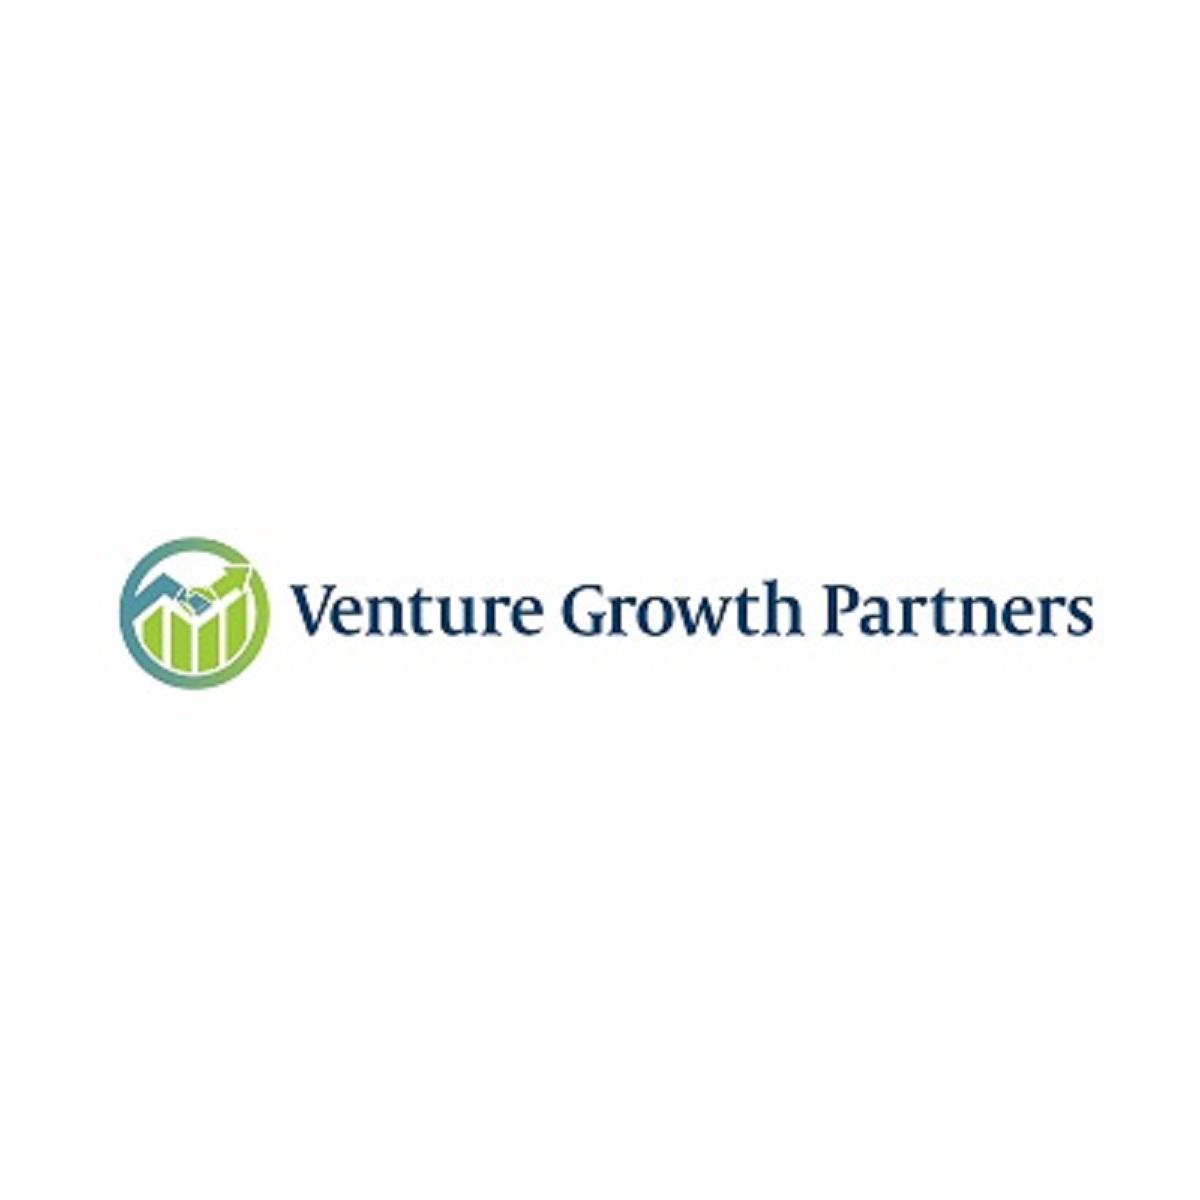 VentureGrowth Partners